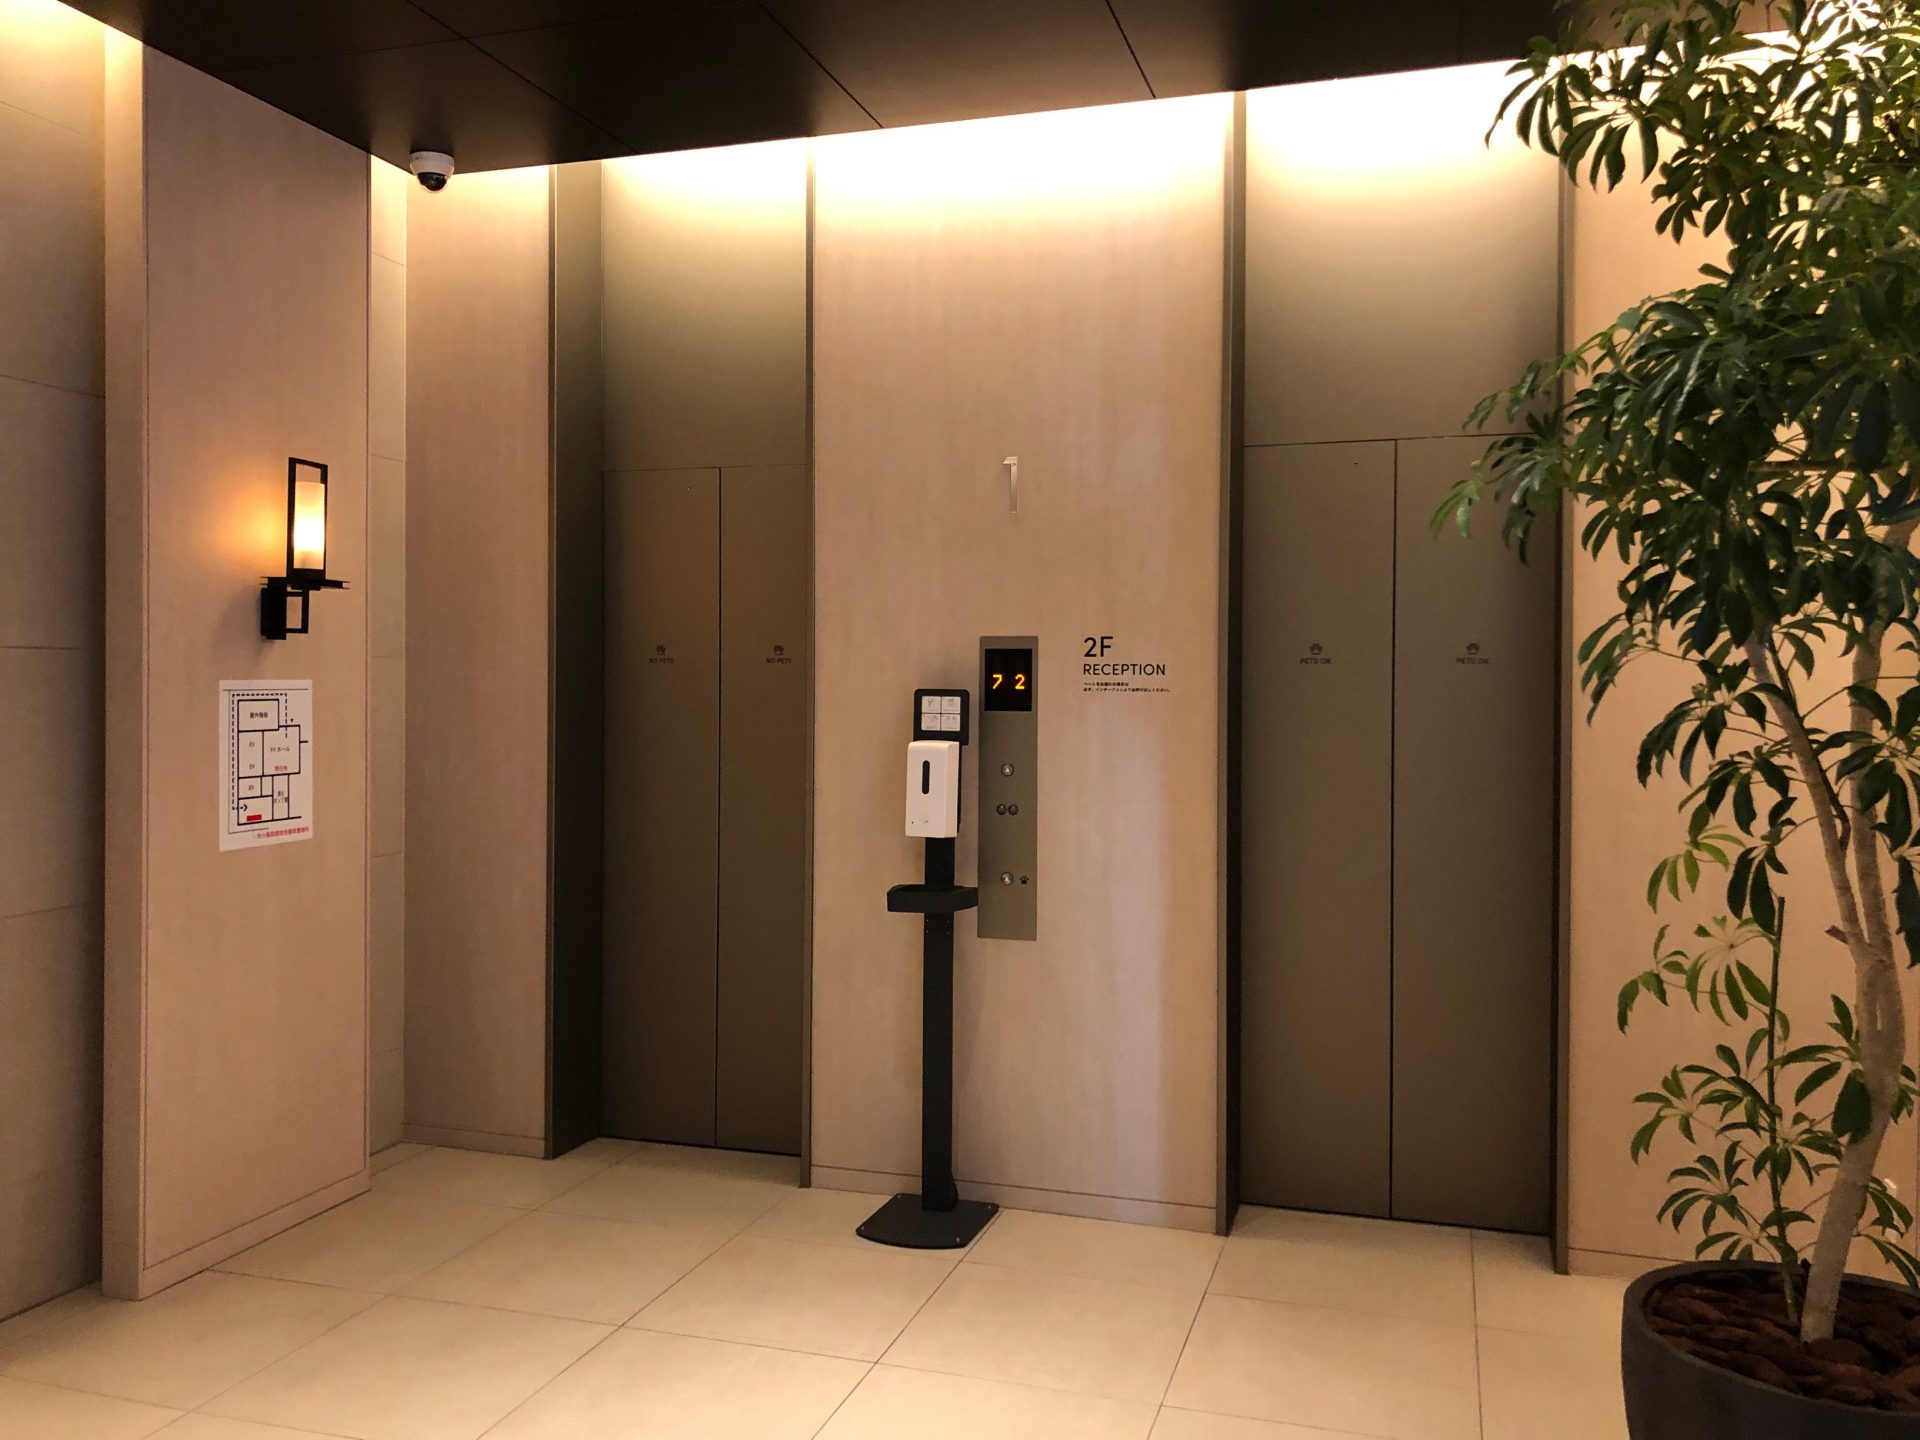 ビジネスエアポート京橋 エレベーターで2Fへ上がると受付